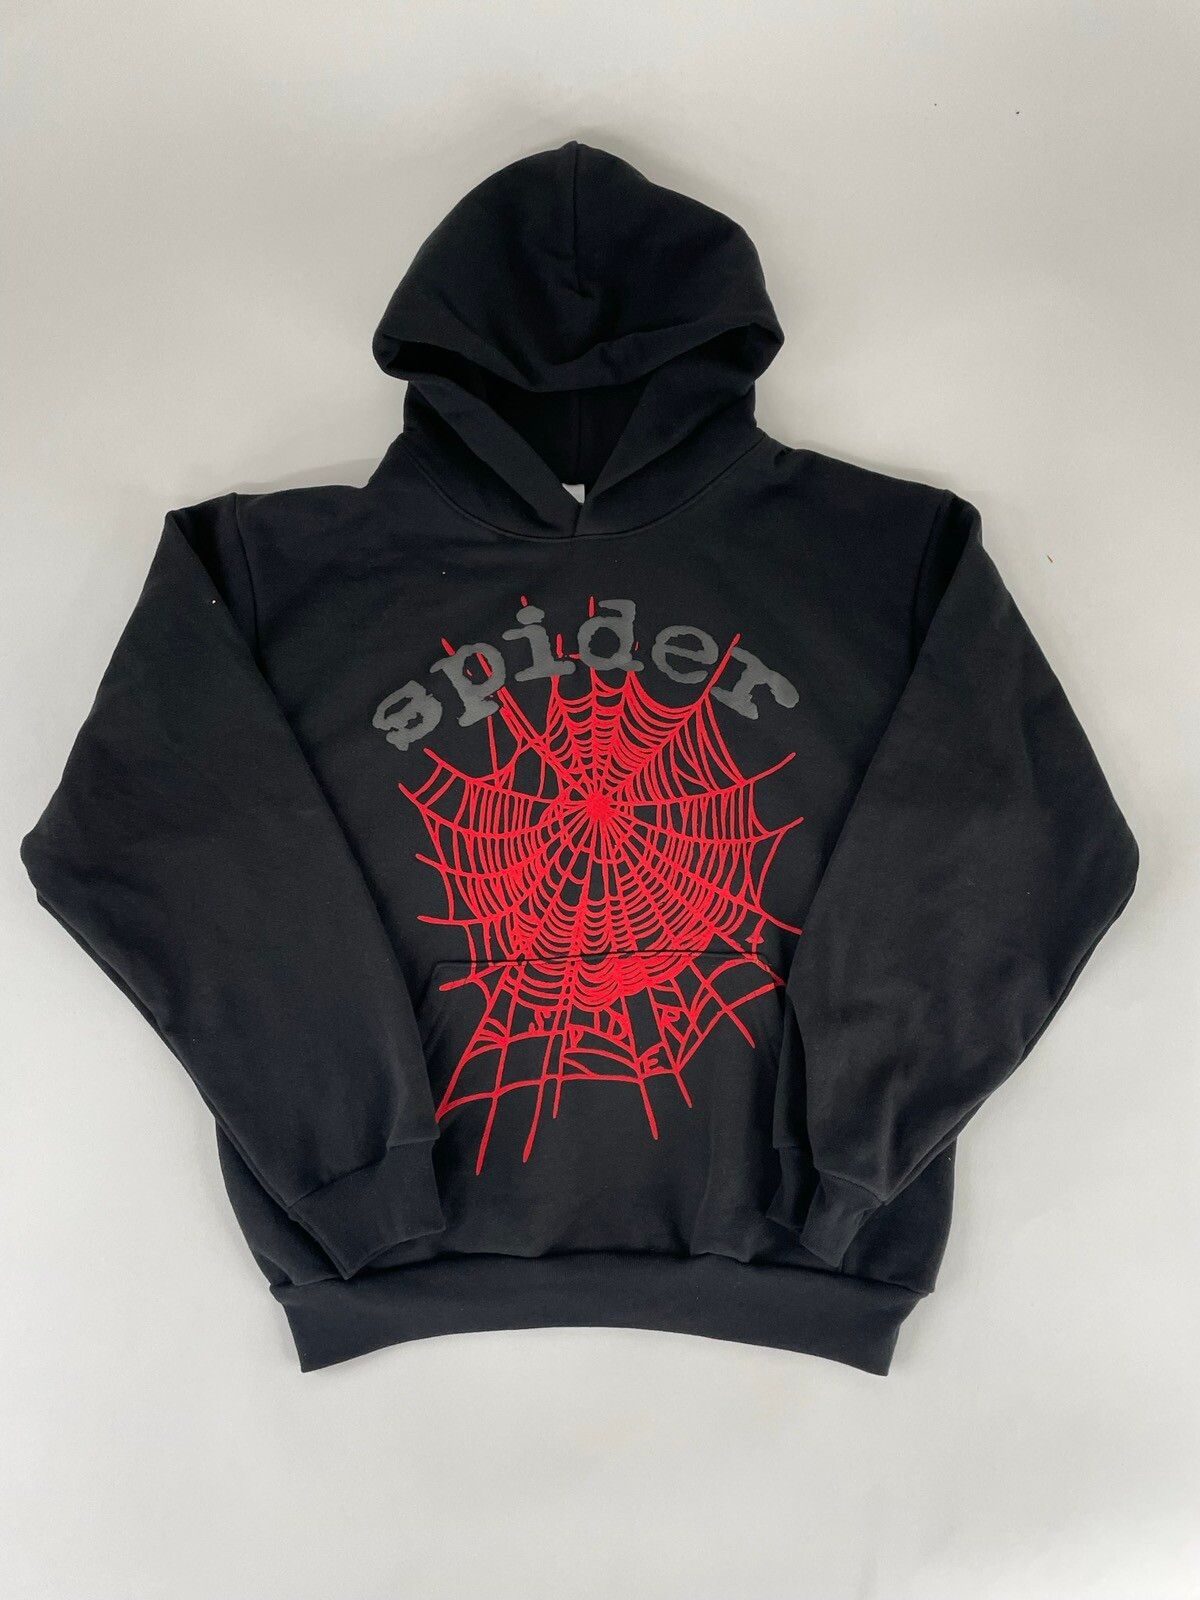 Spider Worldwide Og black sp5der hoodie | Grailed